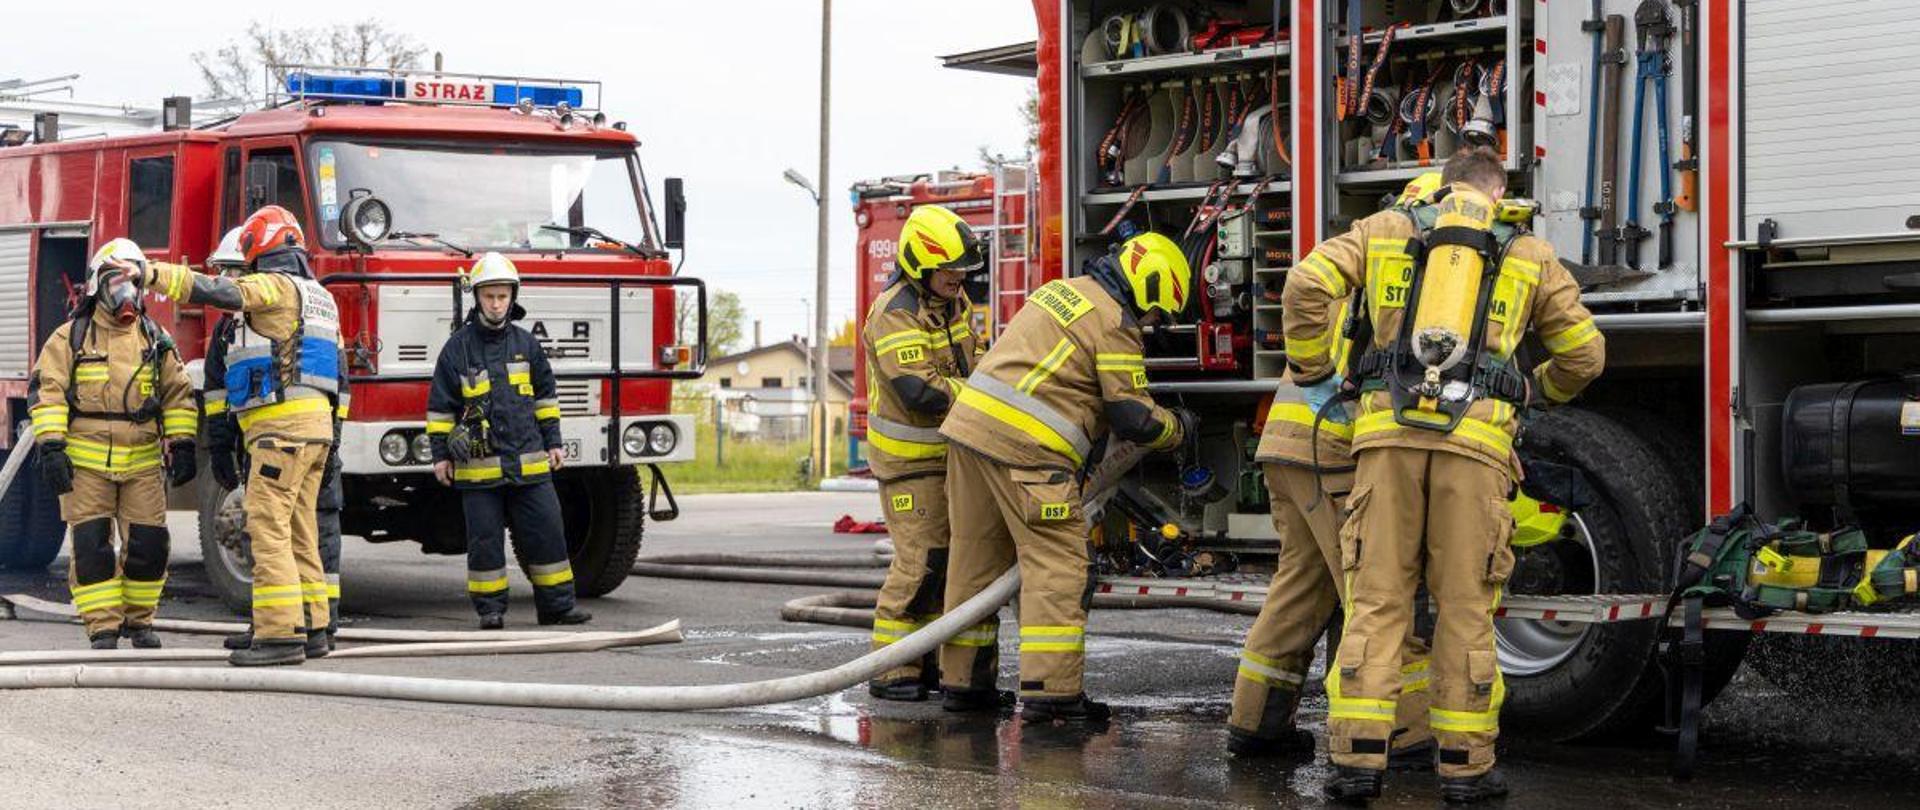 Na zdjęciu znajdują się strażacy w ubraniach specjalnych oraz samochody strażackie do których strażacy podłączają węże